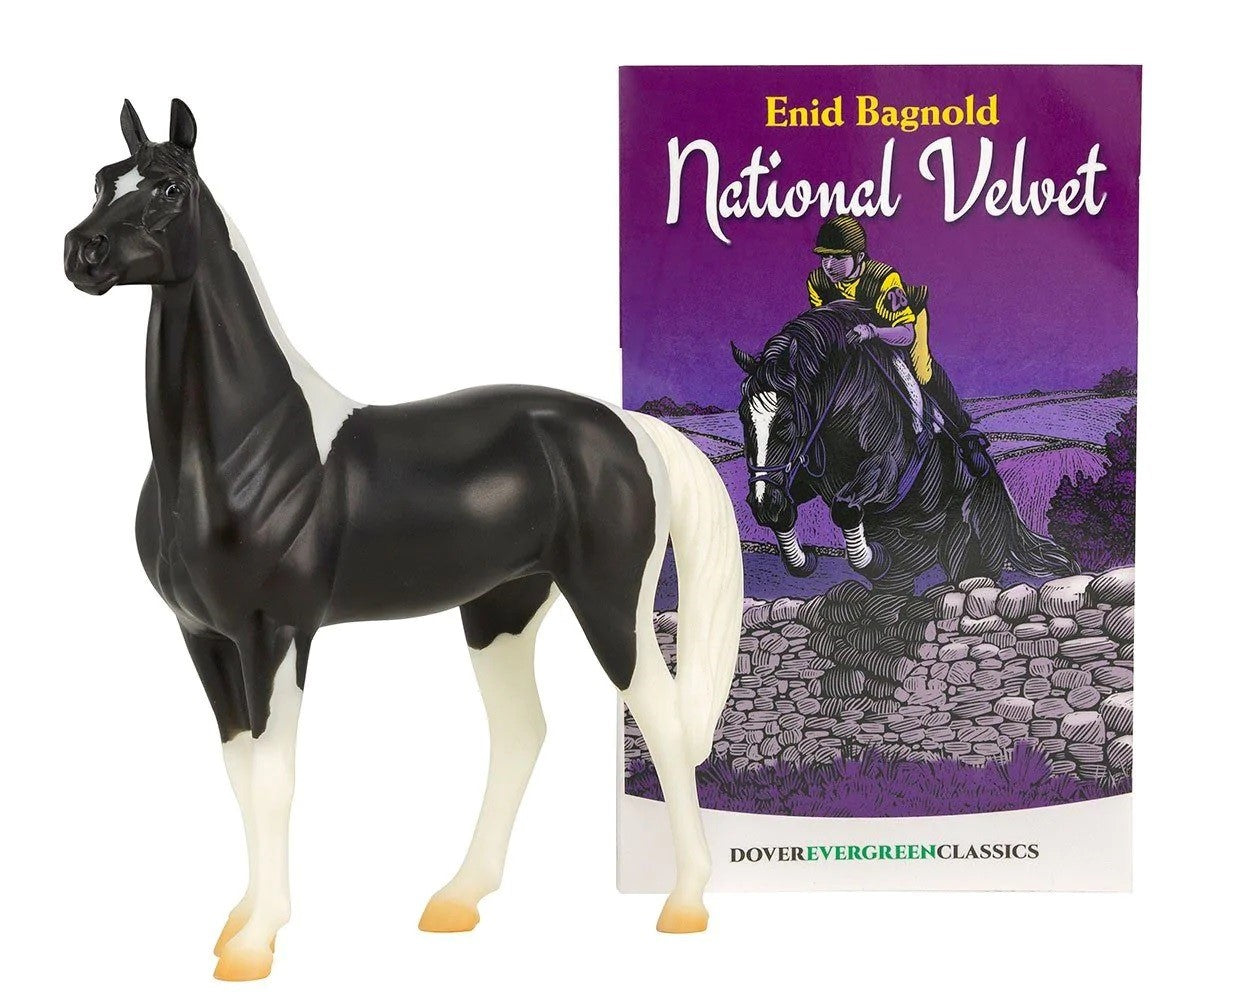 Breyer National Velvet Horse & Book Set - Breeches.com